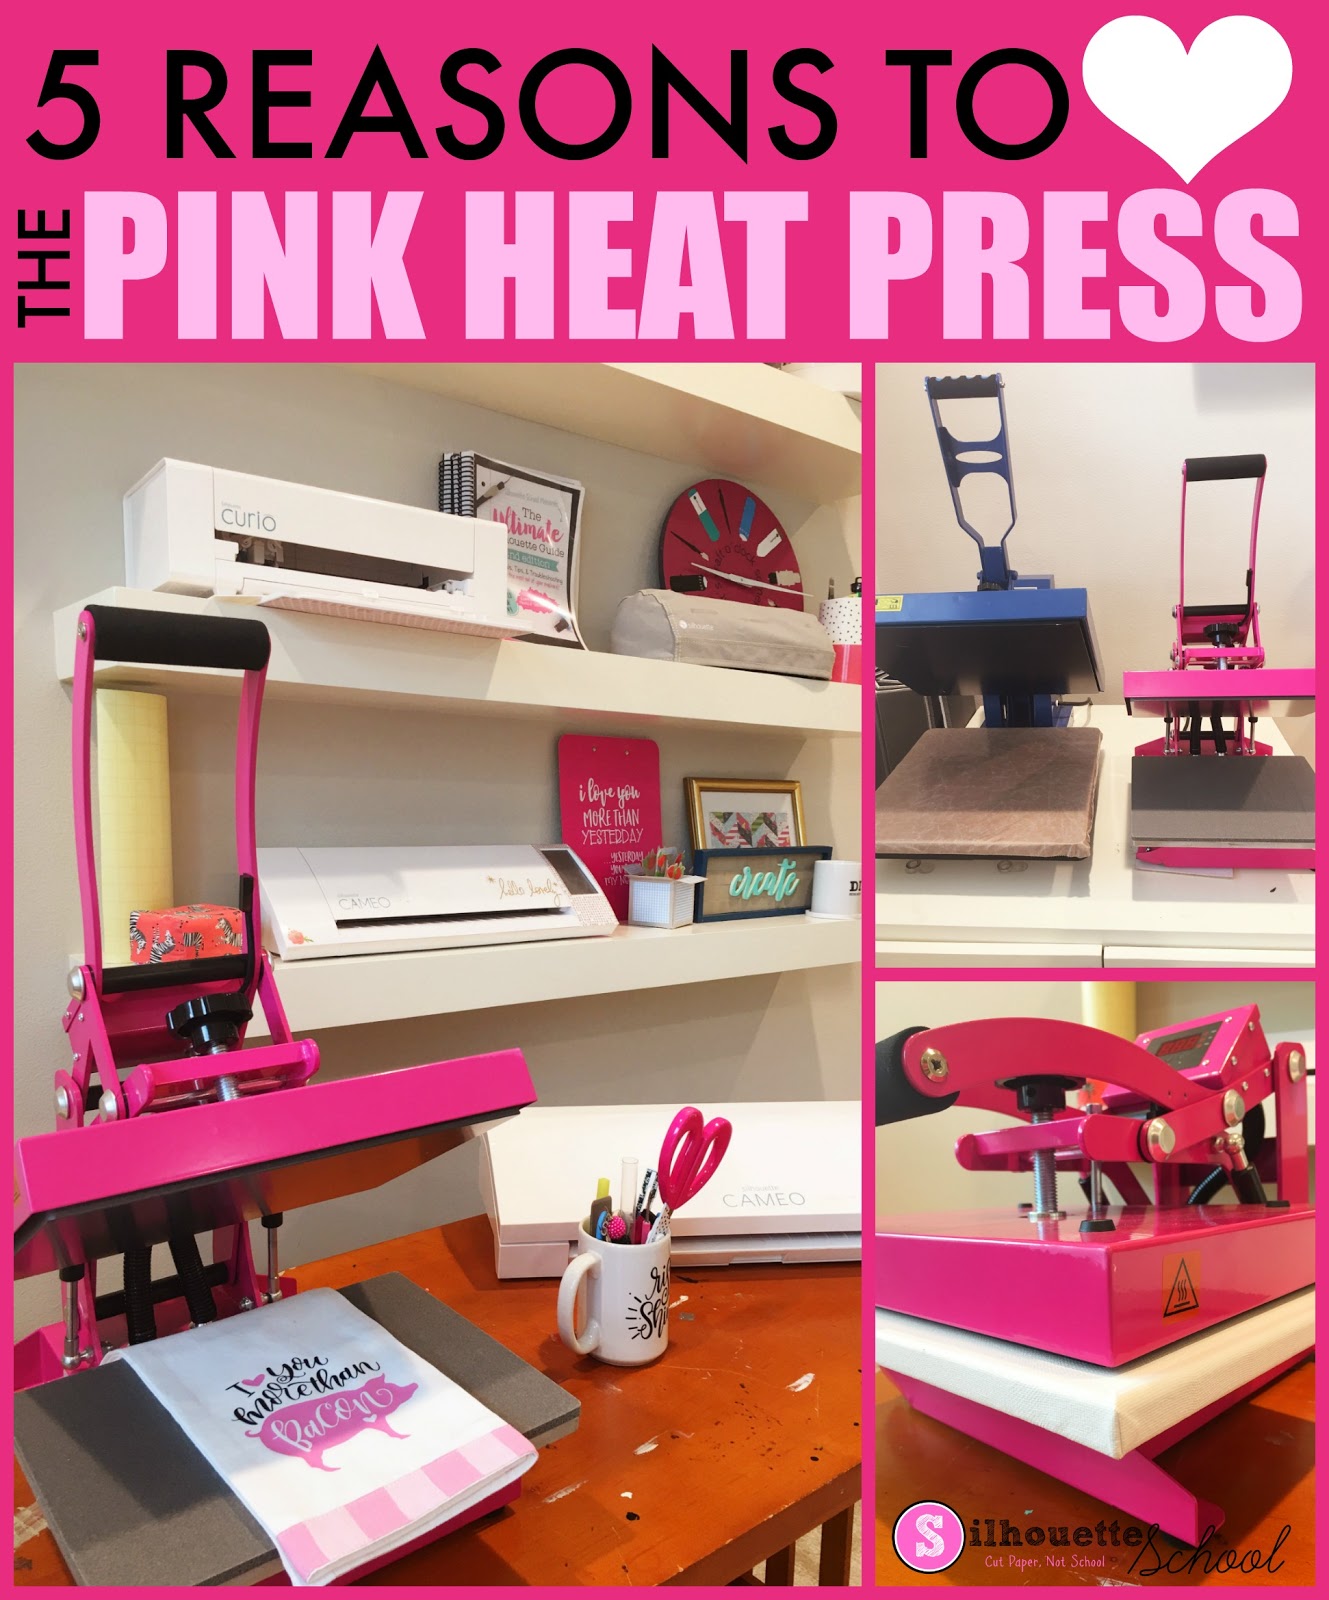 Swing Design 15 x 15 Swing Away 8-in-1 Heat Press - Pink